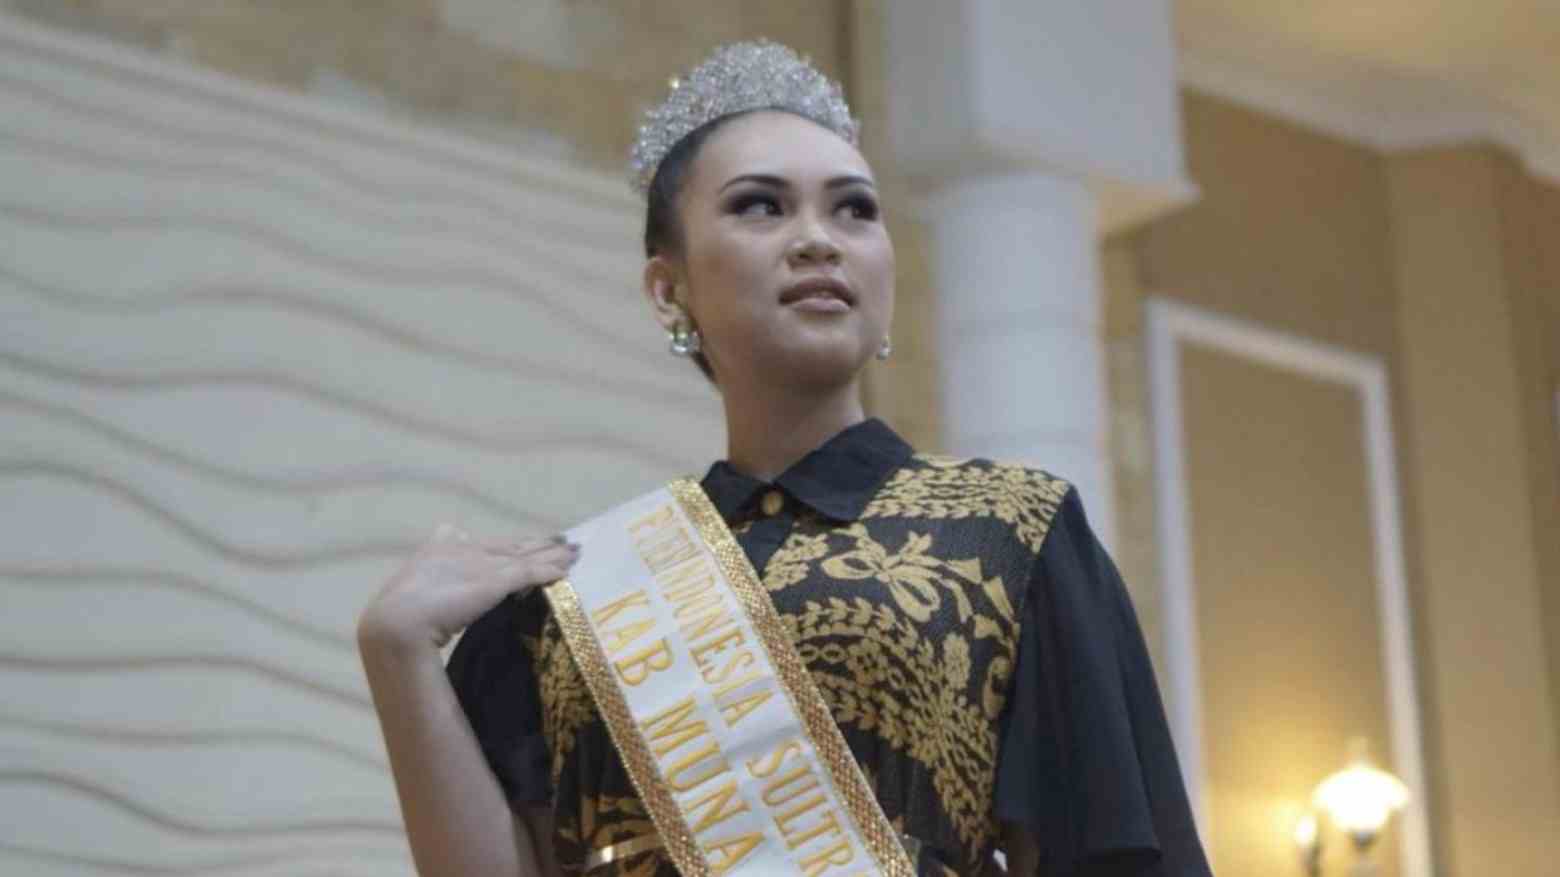 Resmi jadi Puteri Literasi dan Inklusi Keuangan Sultra, Arifah Khansa Muslimah Ungkap Rasa Syukur